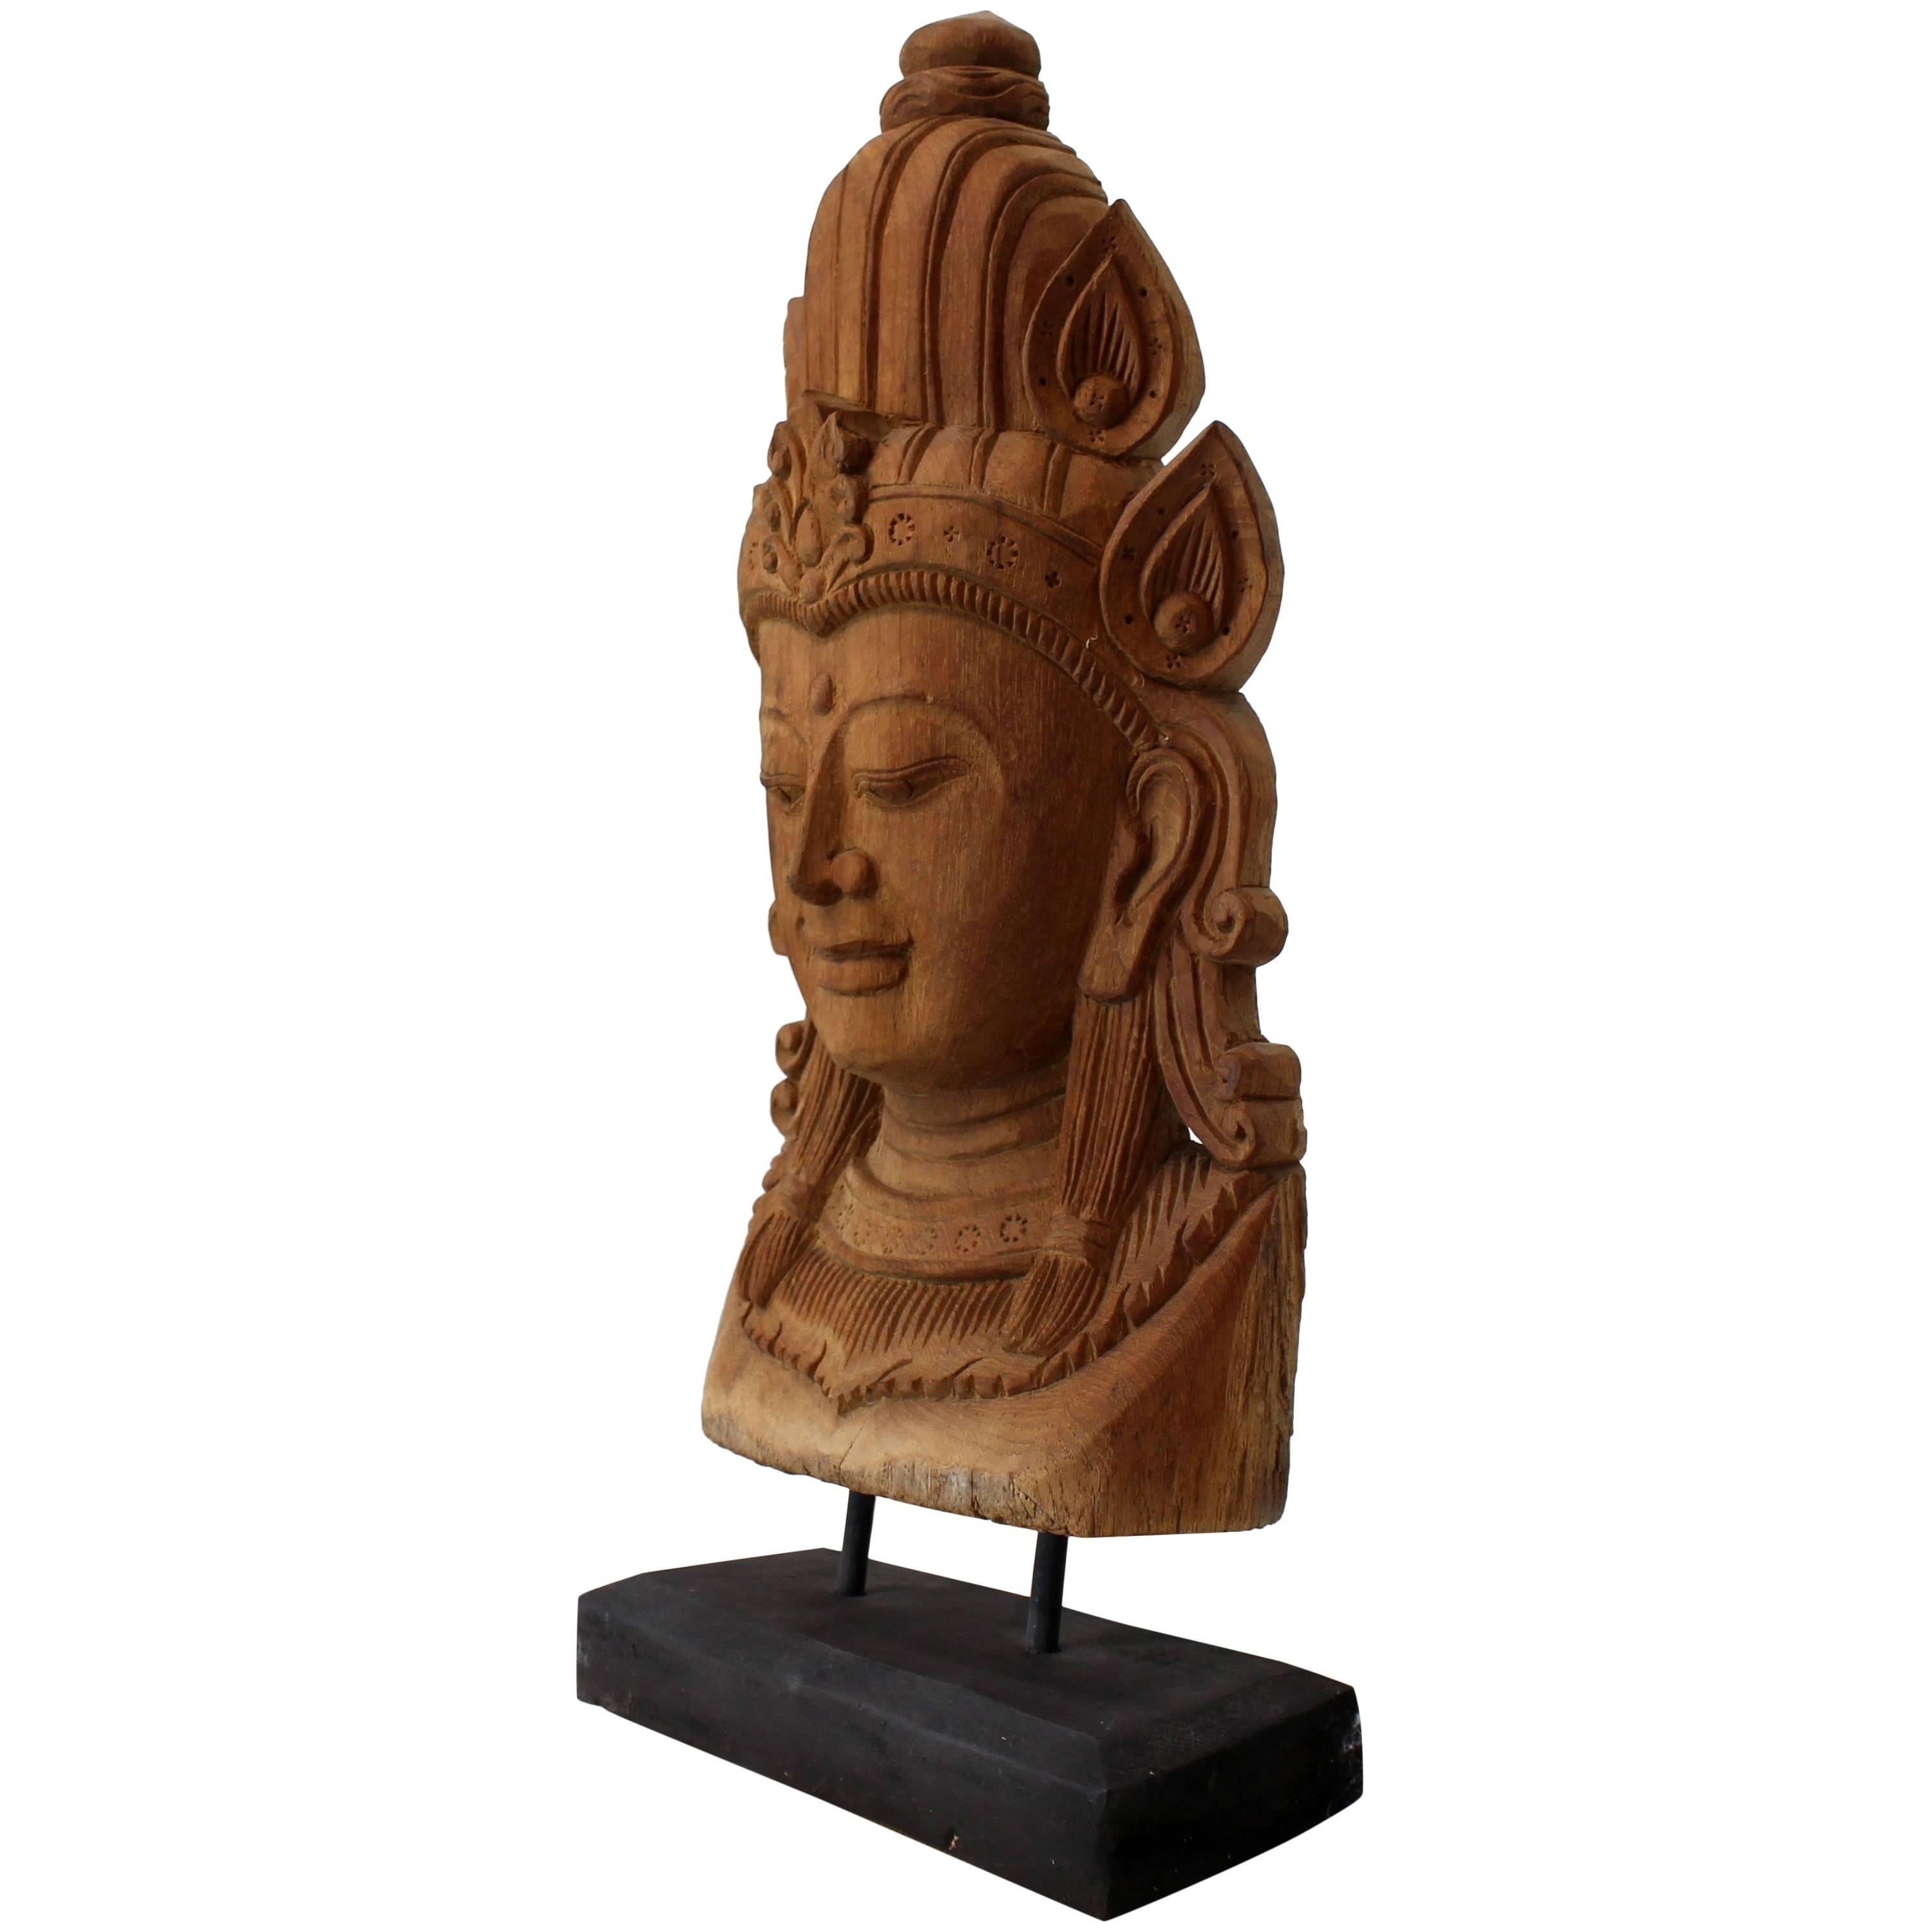 Masque en teck finement sculpté sur pied de sculpture de Bouddha